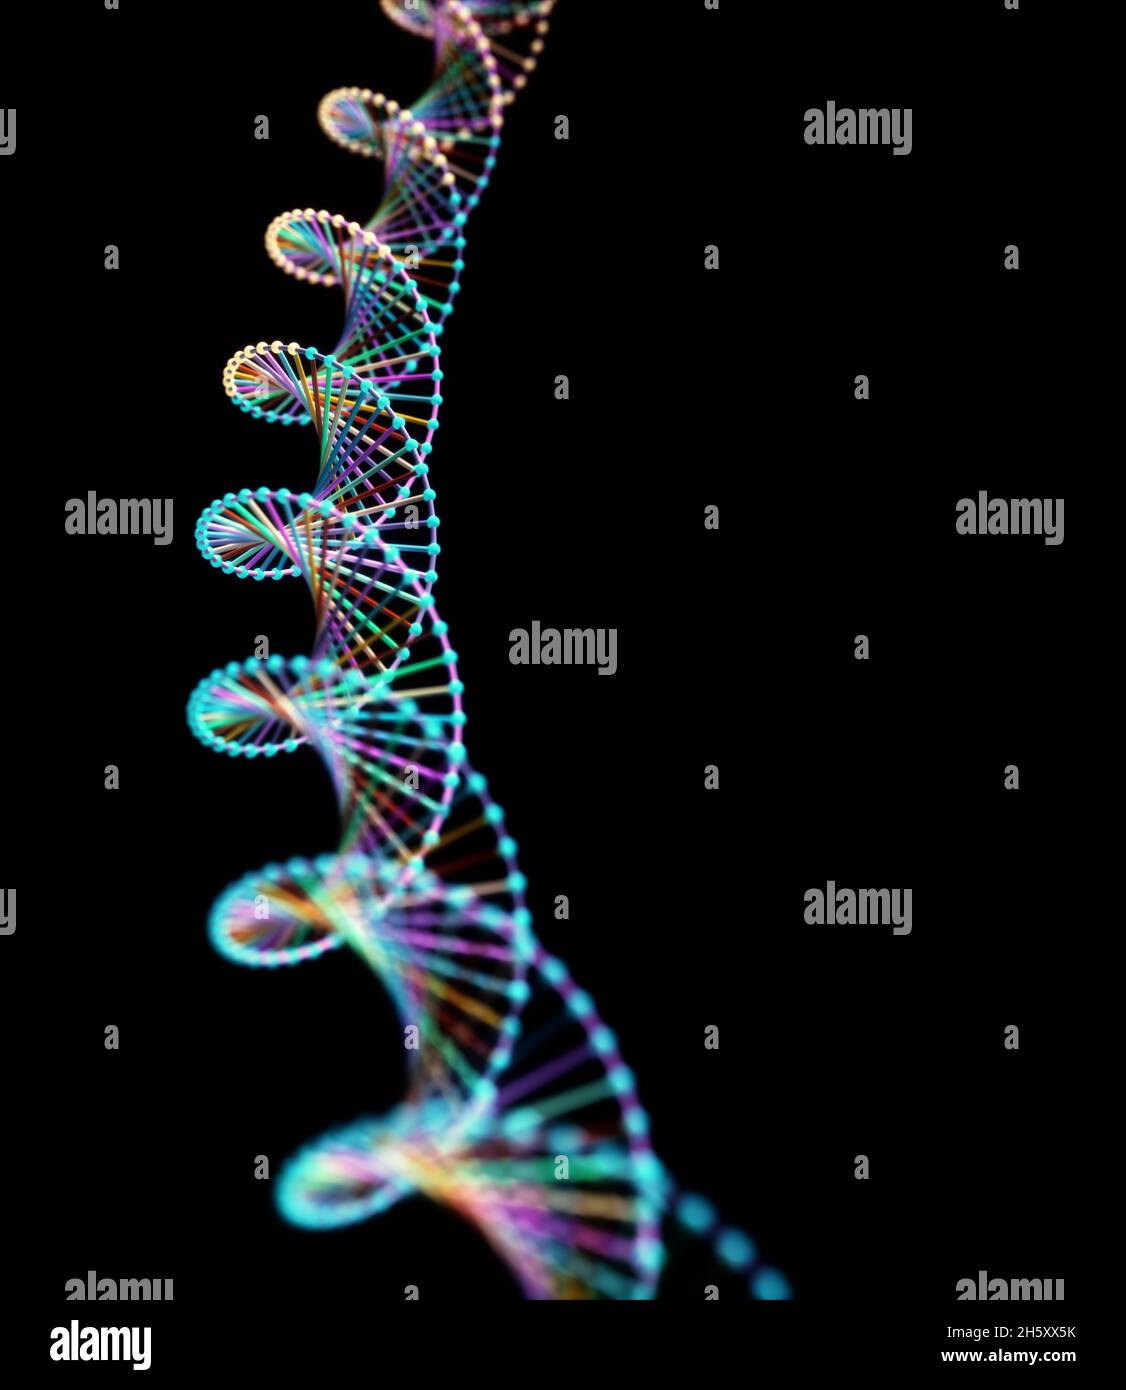 Image abstraite de l'ADN des codes génétiques. Image de concept à utiliser comme arrière-plan. Illustration 3D. Banque D'Images